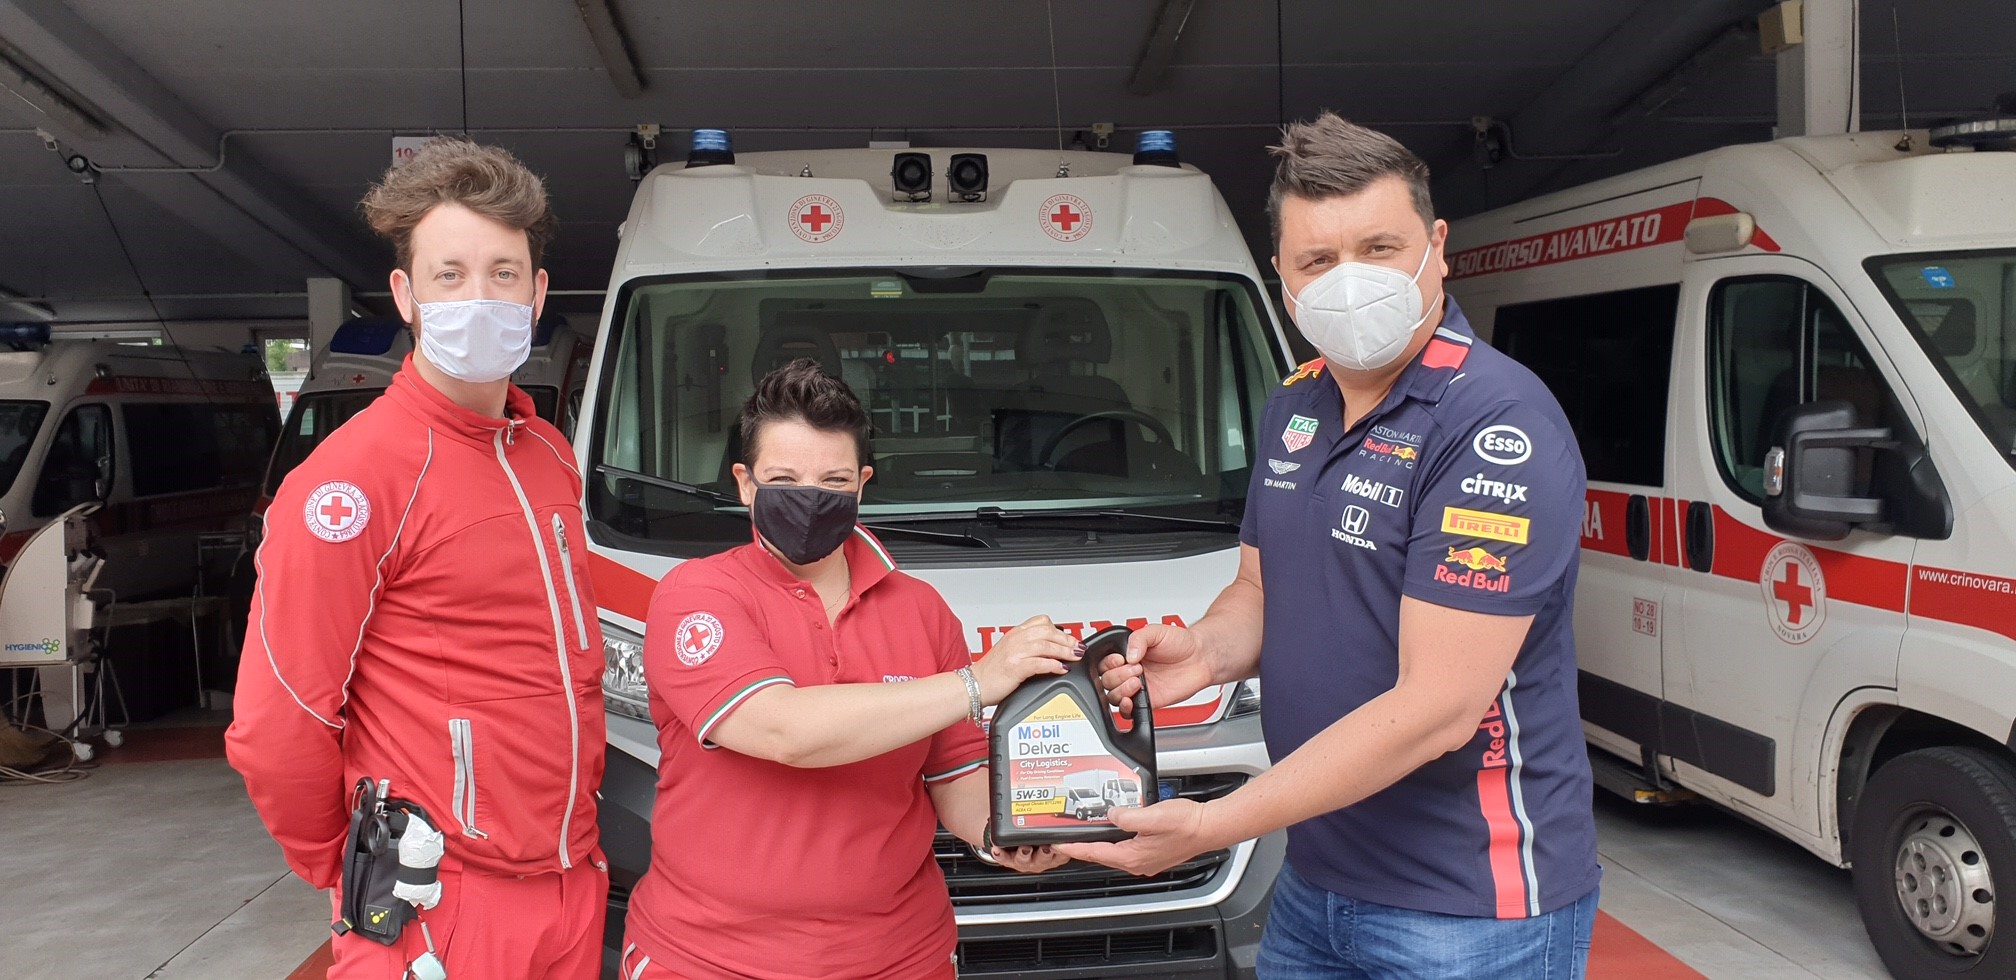 Nelsa, uno degli Authorized MobilTM Distributor che ha collaborato alla donazione dei lubrificanti Mobil DelvacTM, effettua la consegna al Comitato di Novara della Croce Rossa Italiana